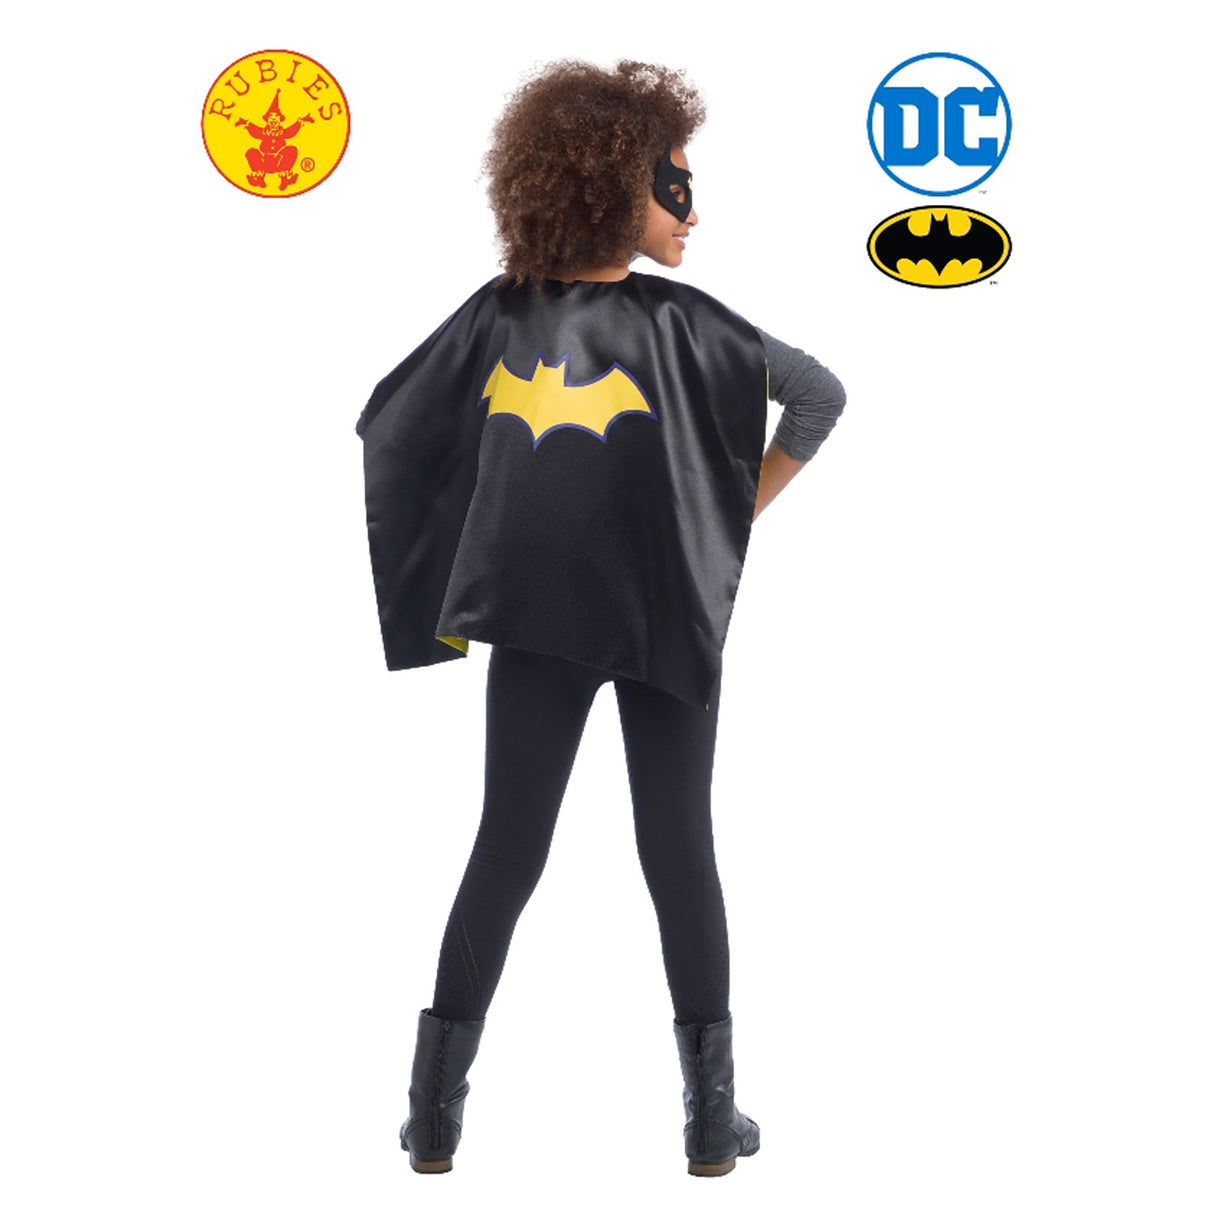 Rubies Dc Comics Batgirl Cape Set, Black